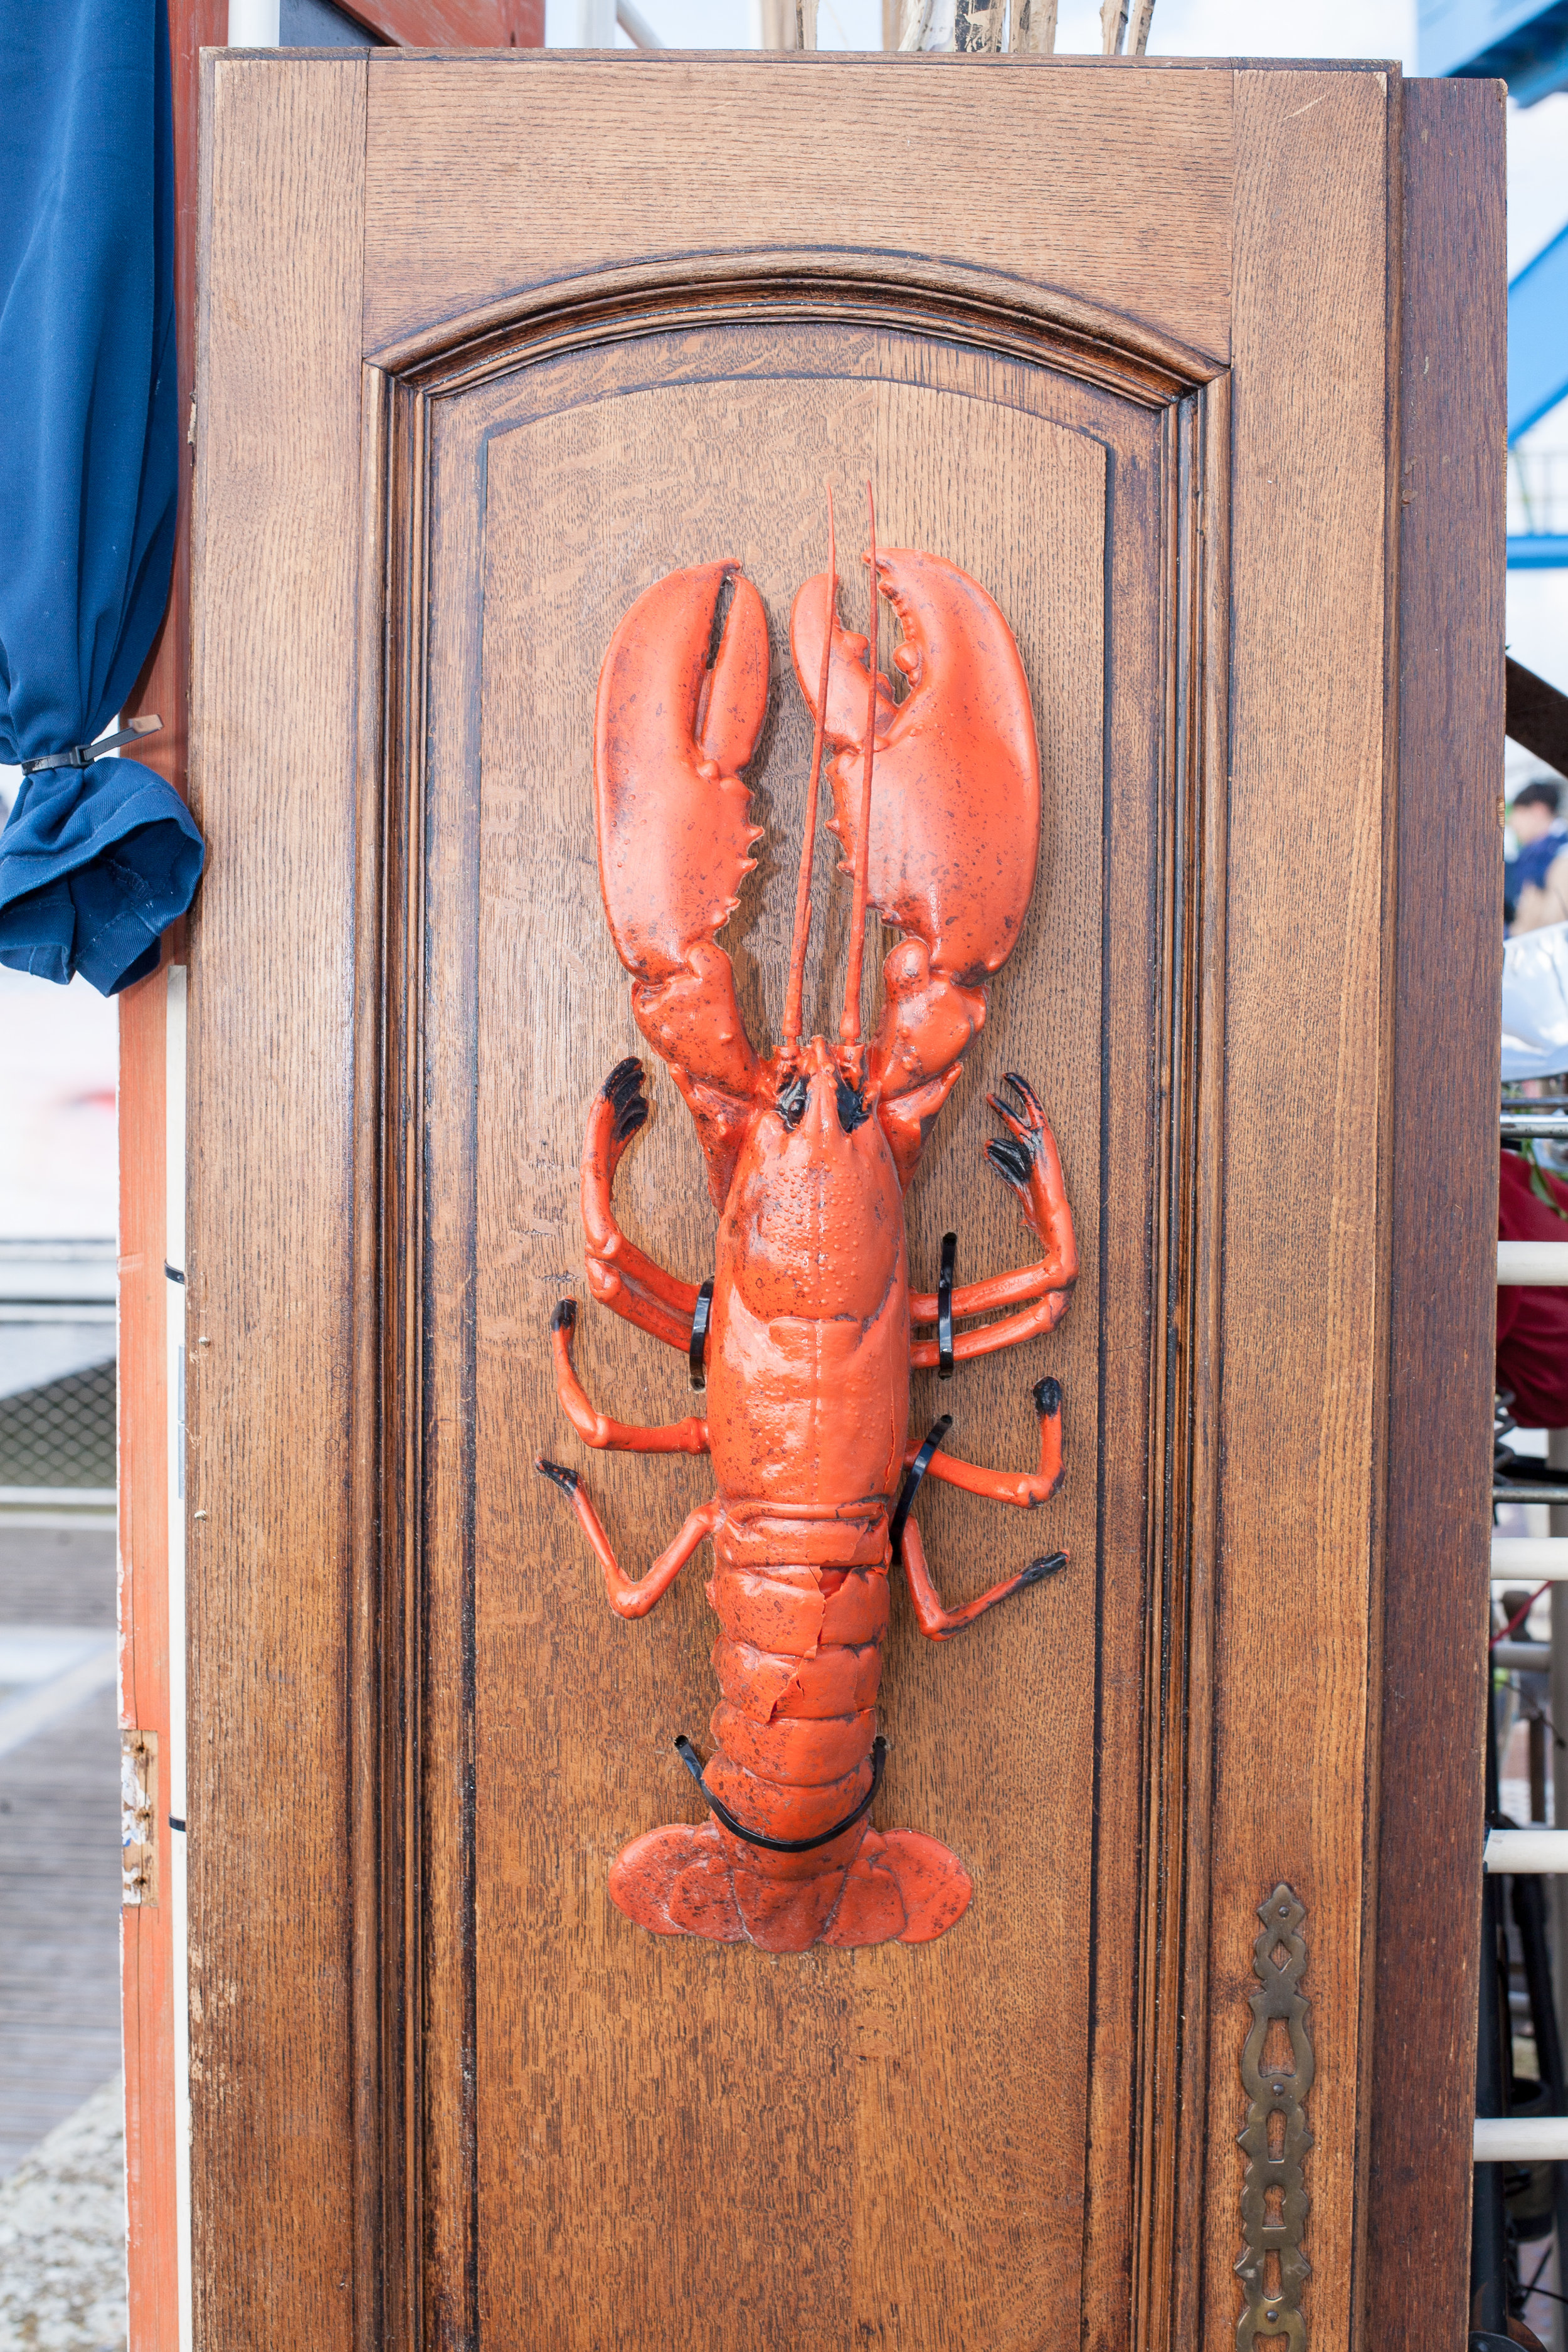 Old lobster